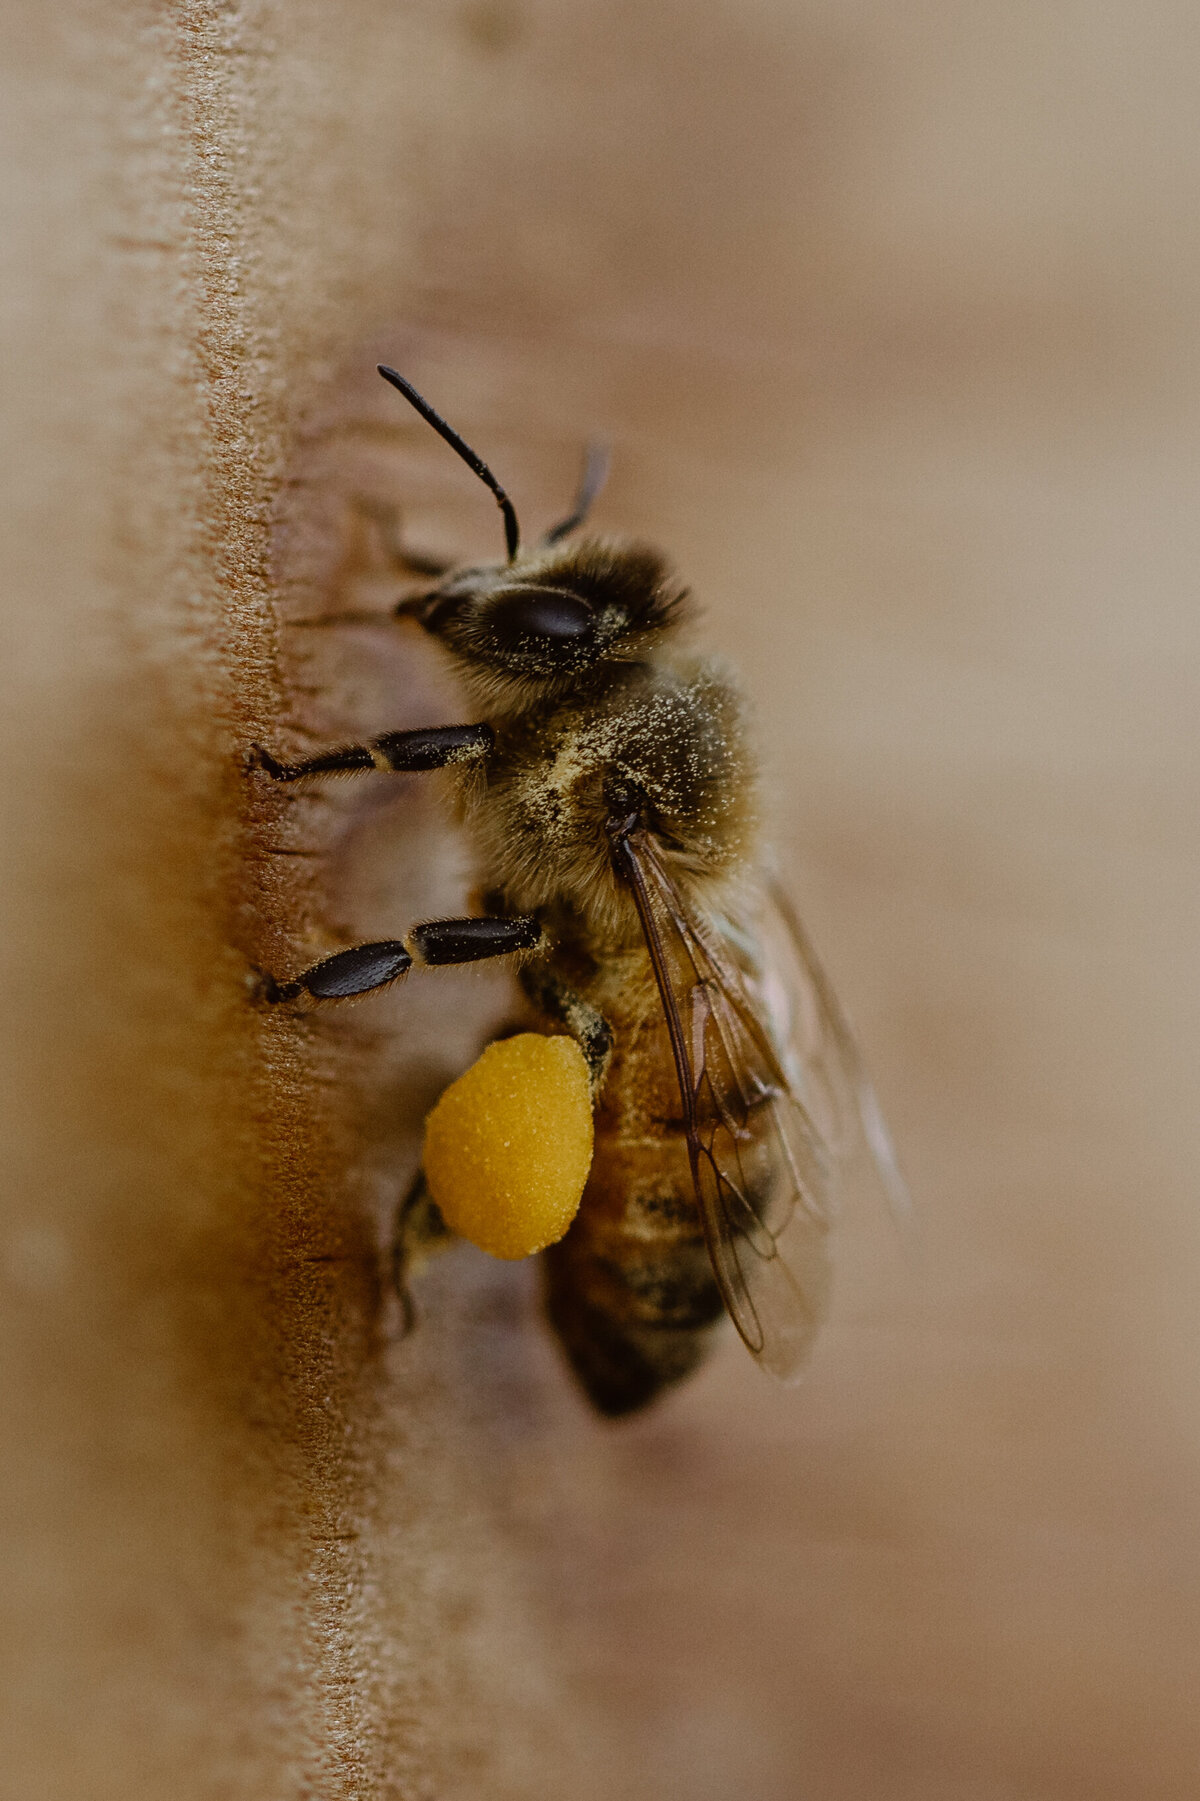 Capella Fiber and Bees-Simply Cassandra-9